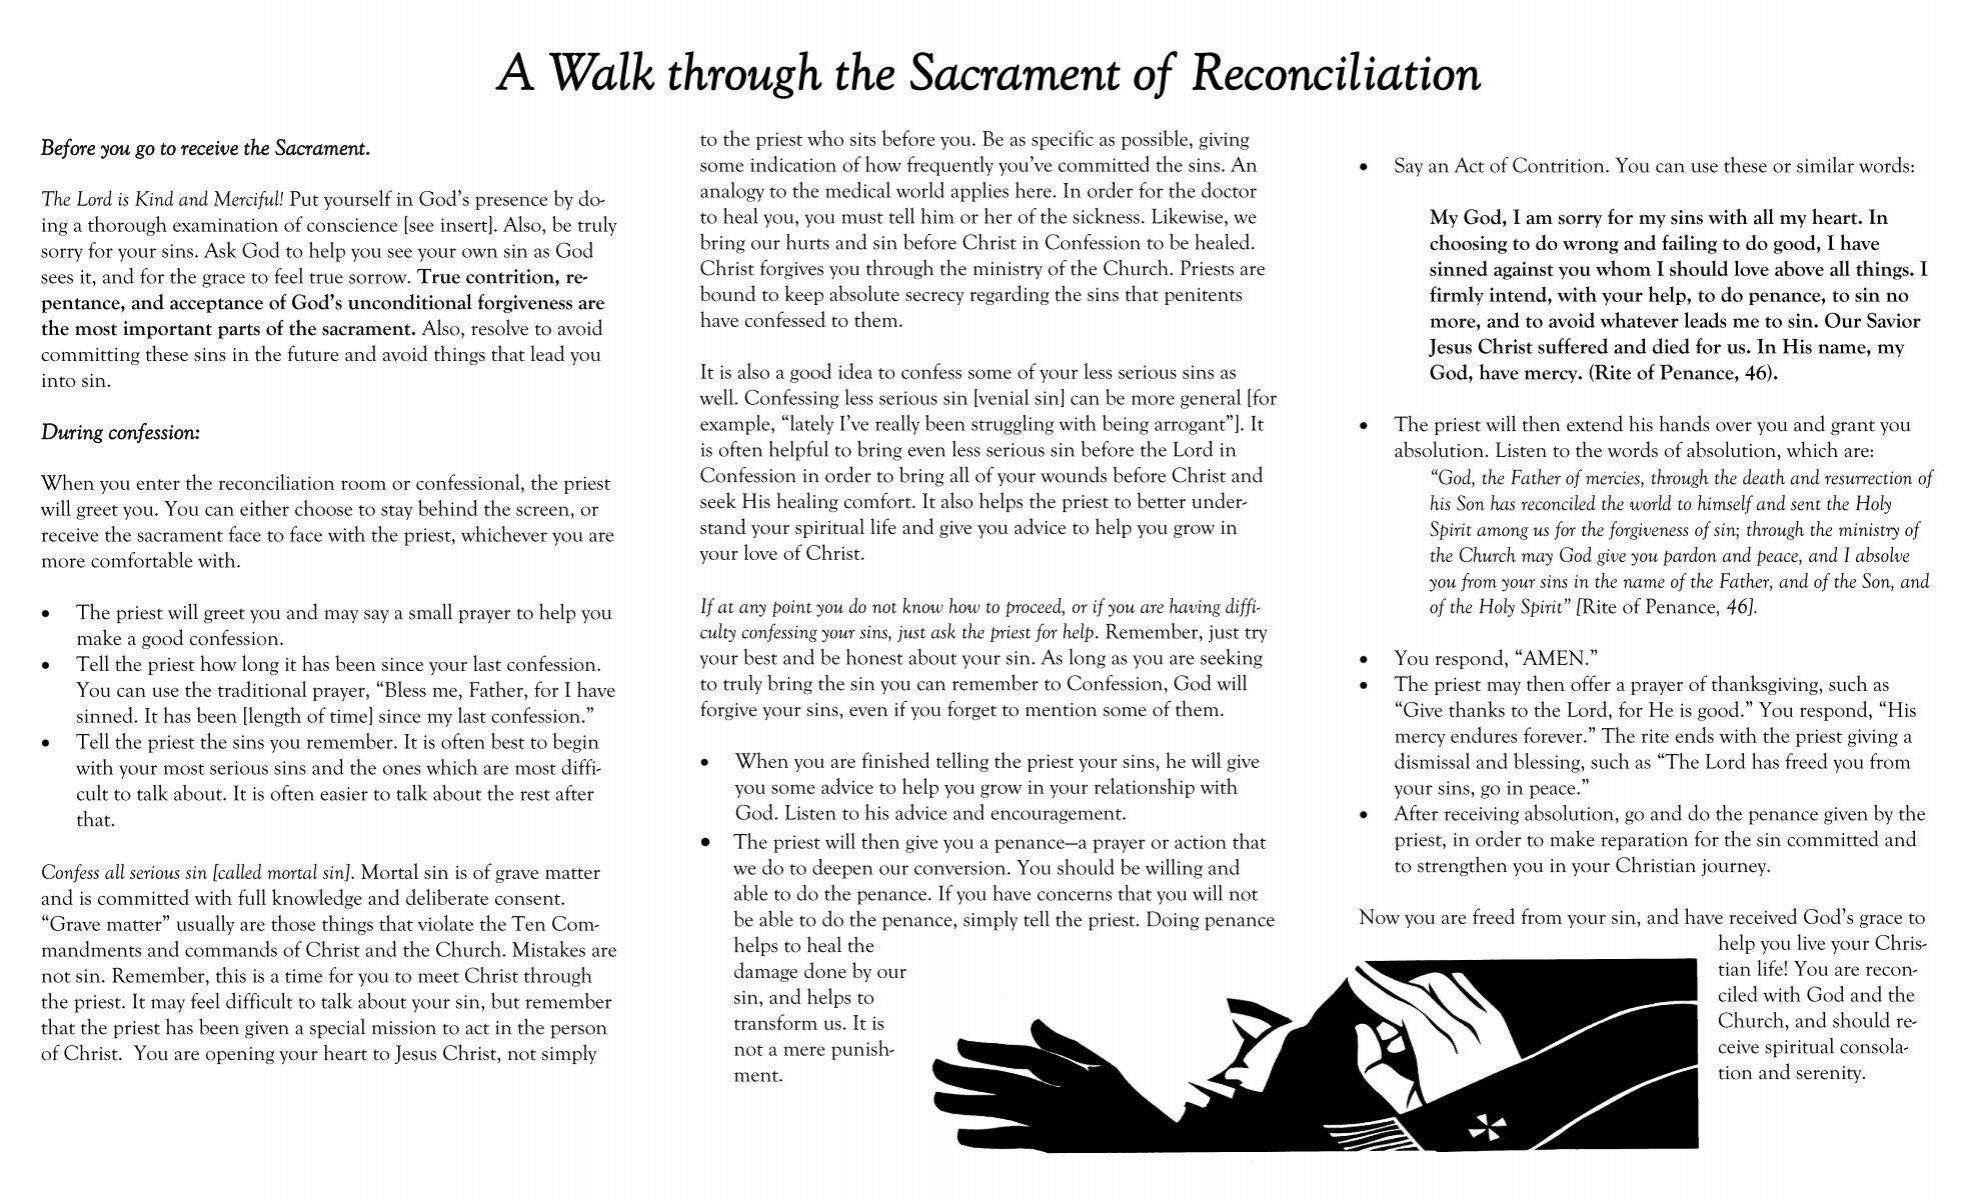 sacrament of reconciliation prayer